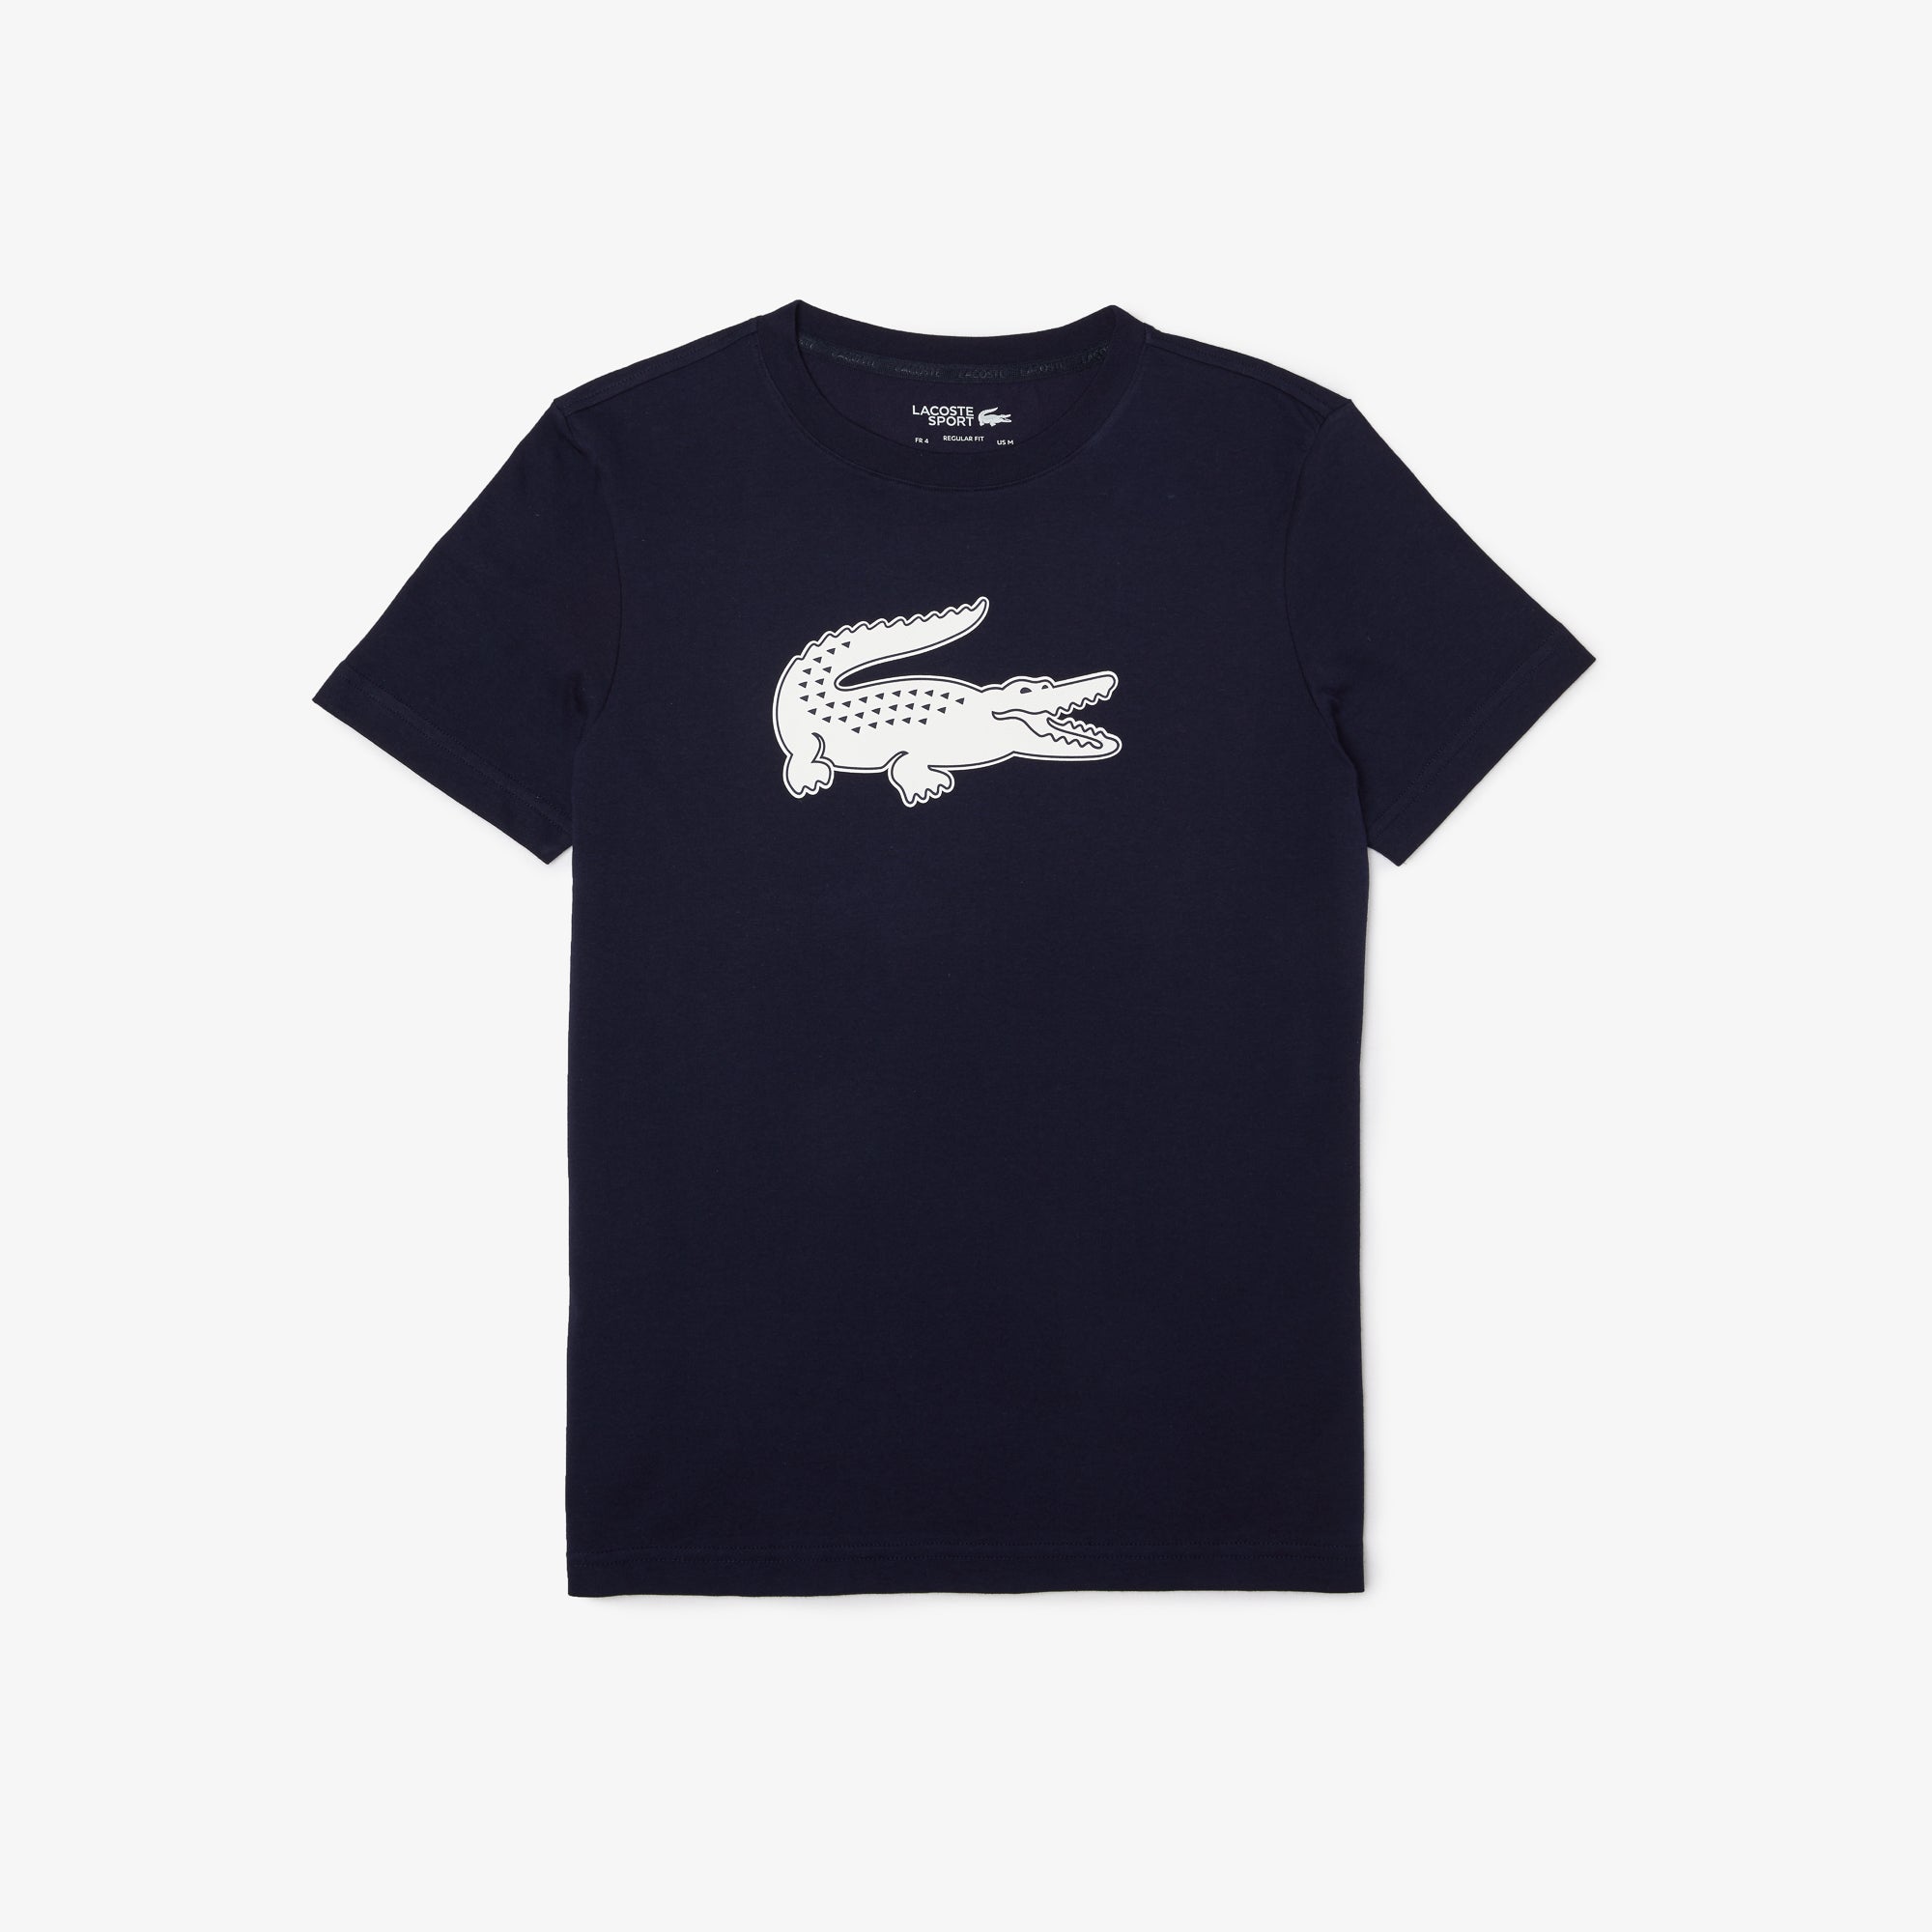 Lacoste T-shirt (Navy Blue/White) - L